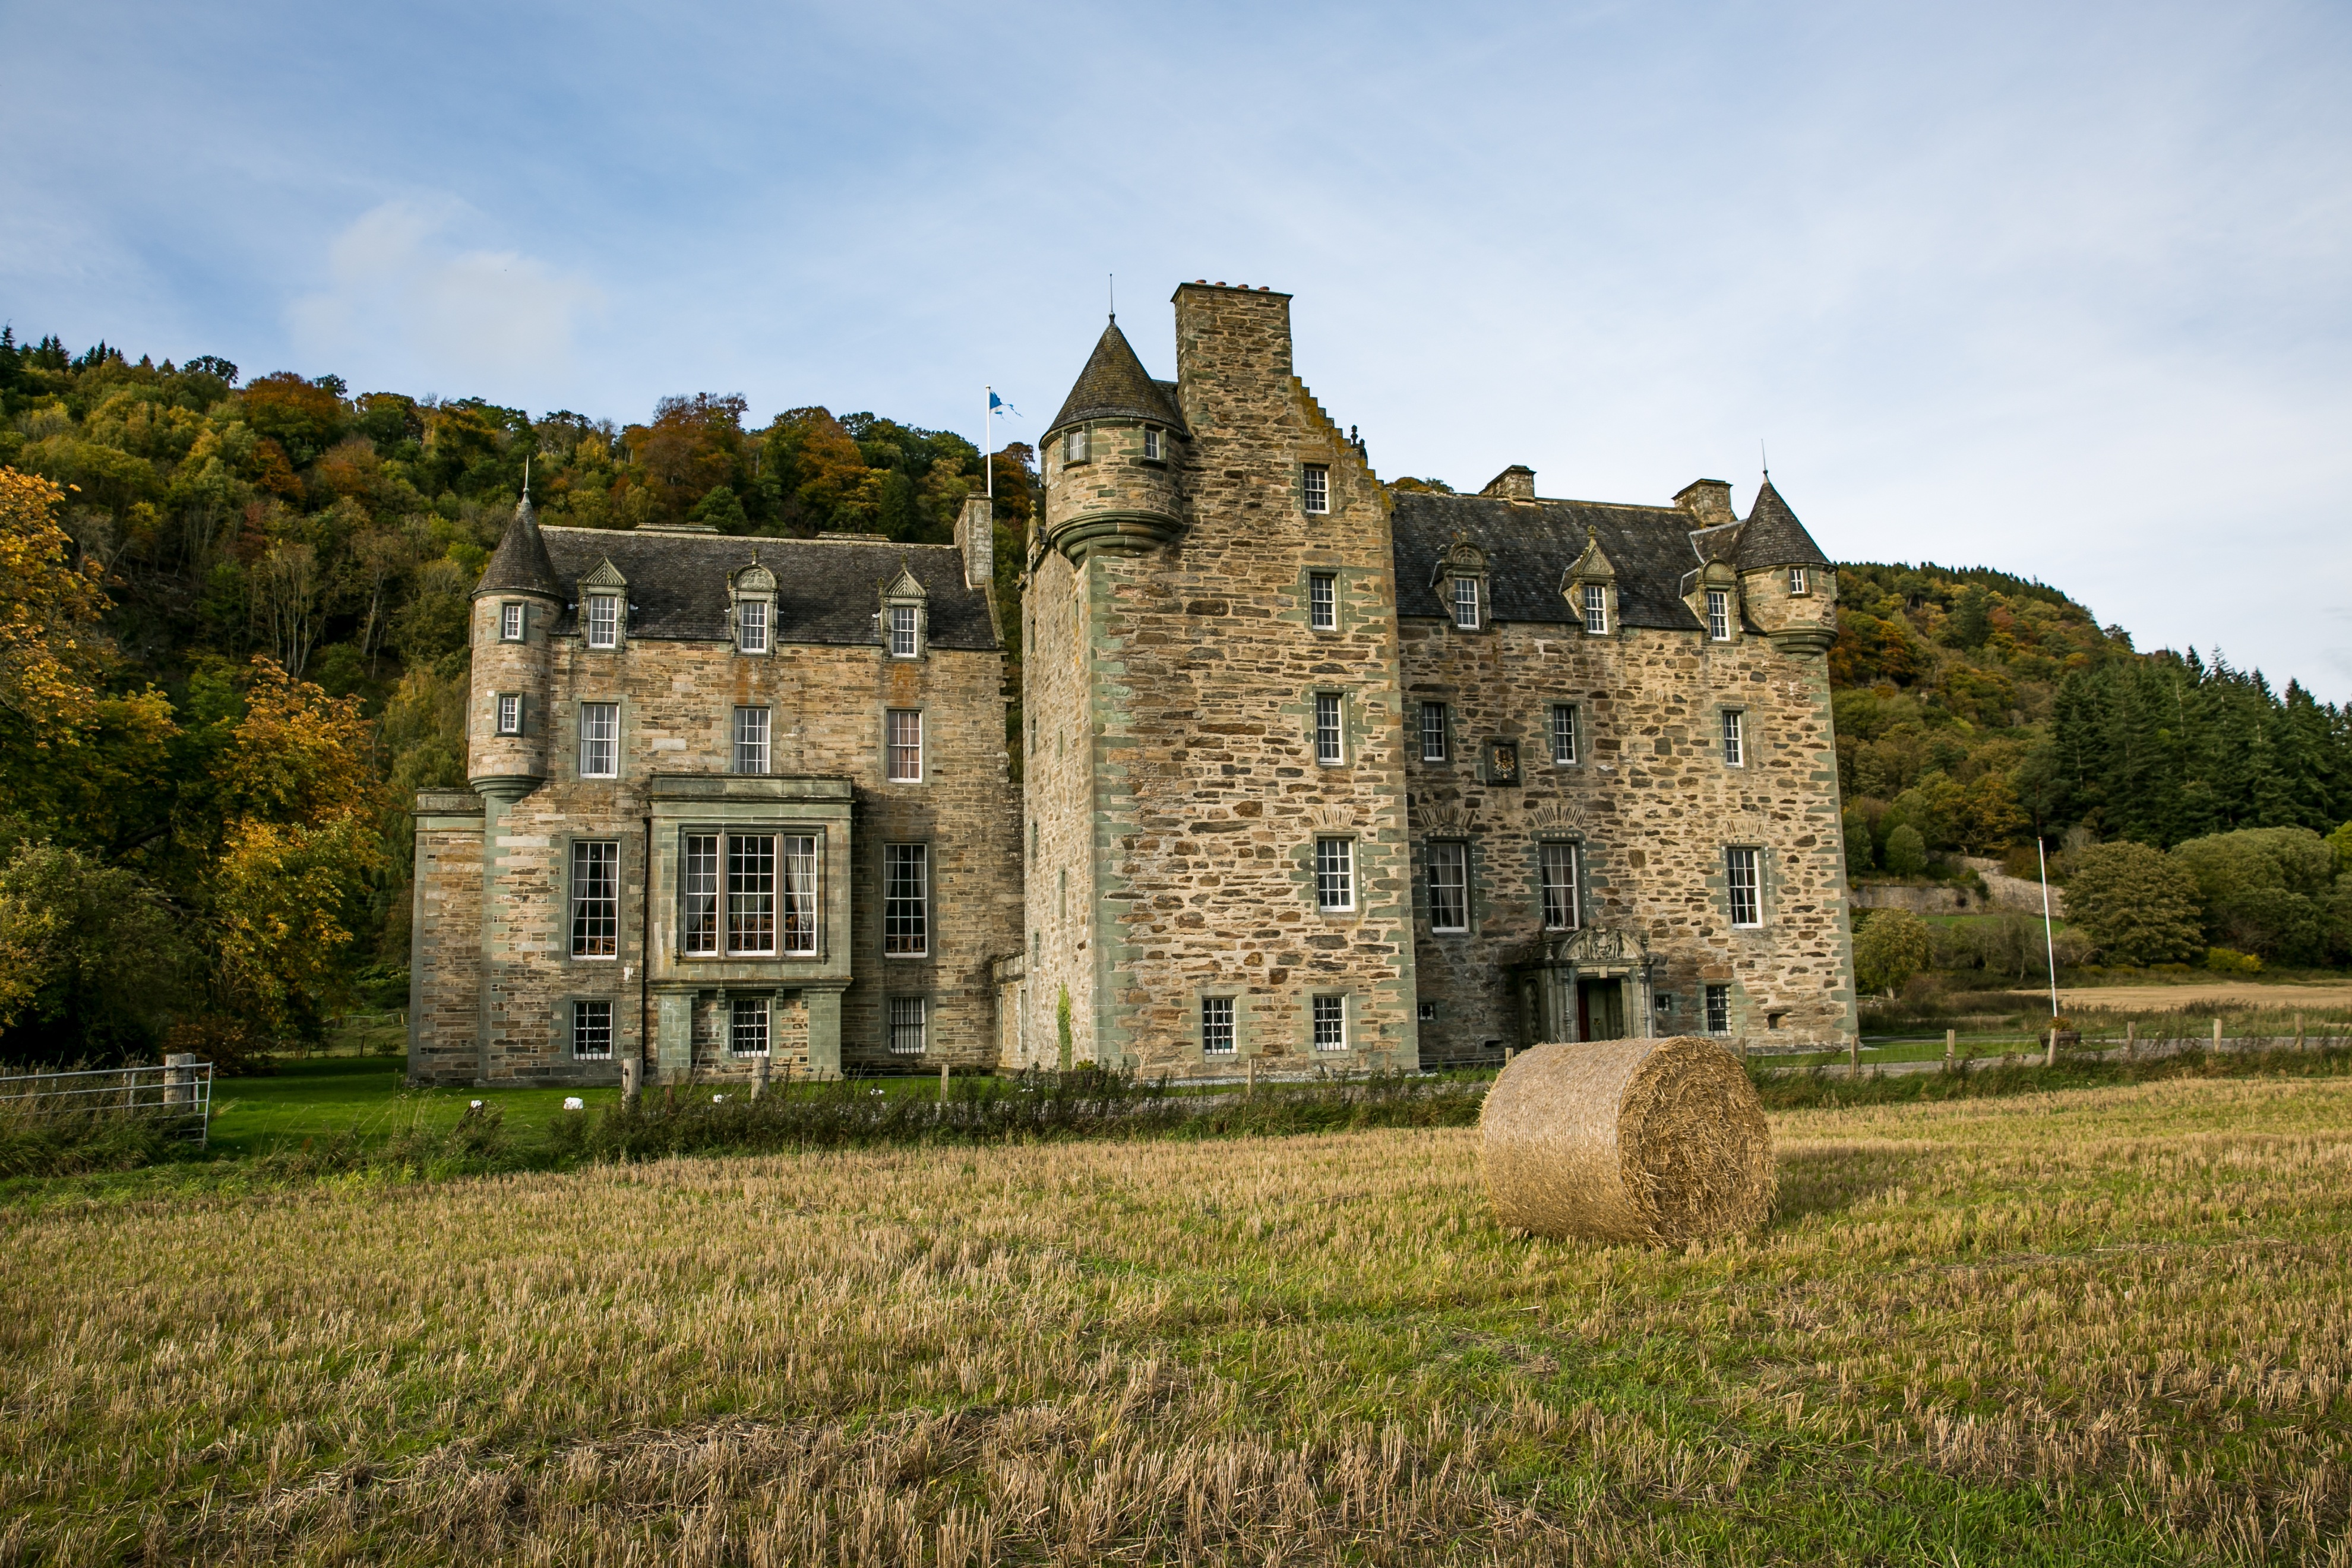 Замок Лохланд Шотландия